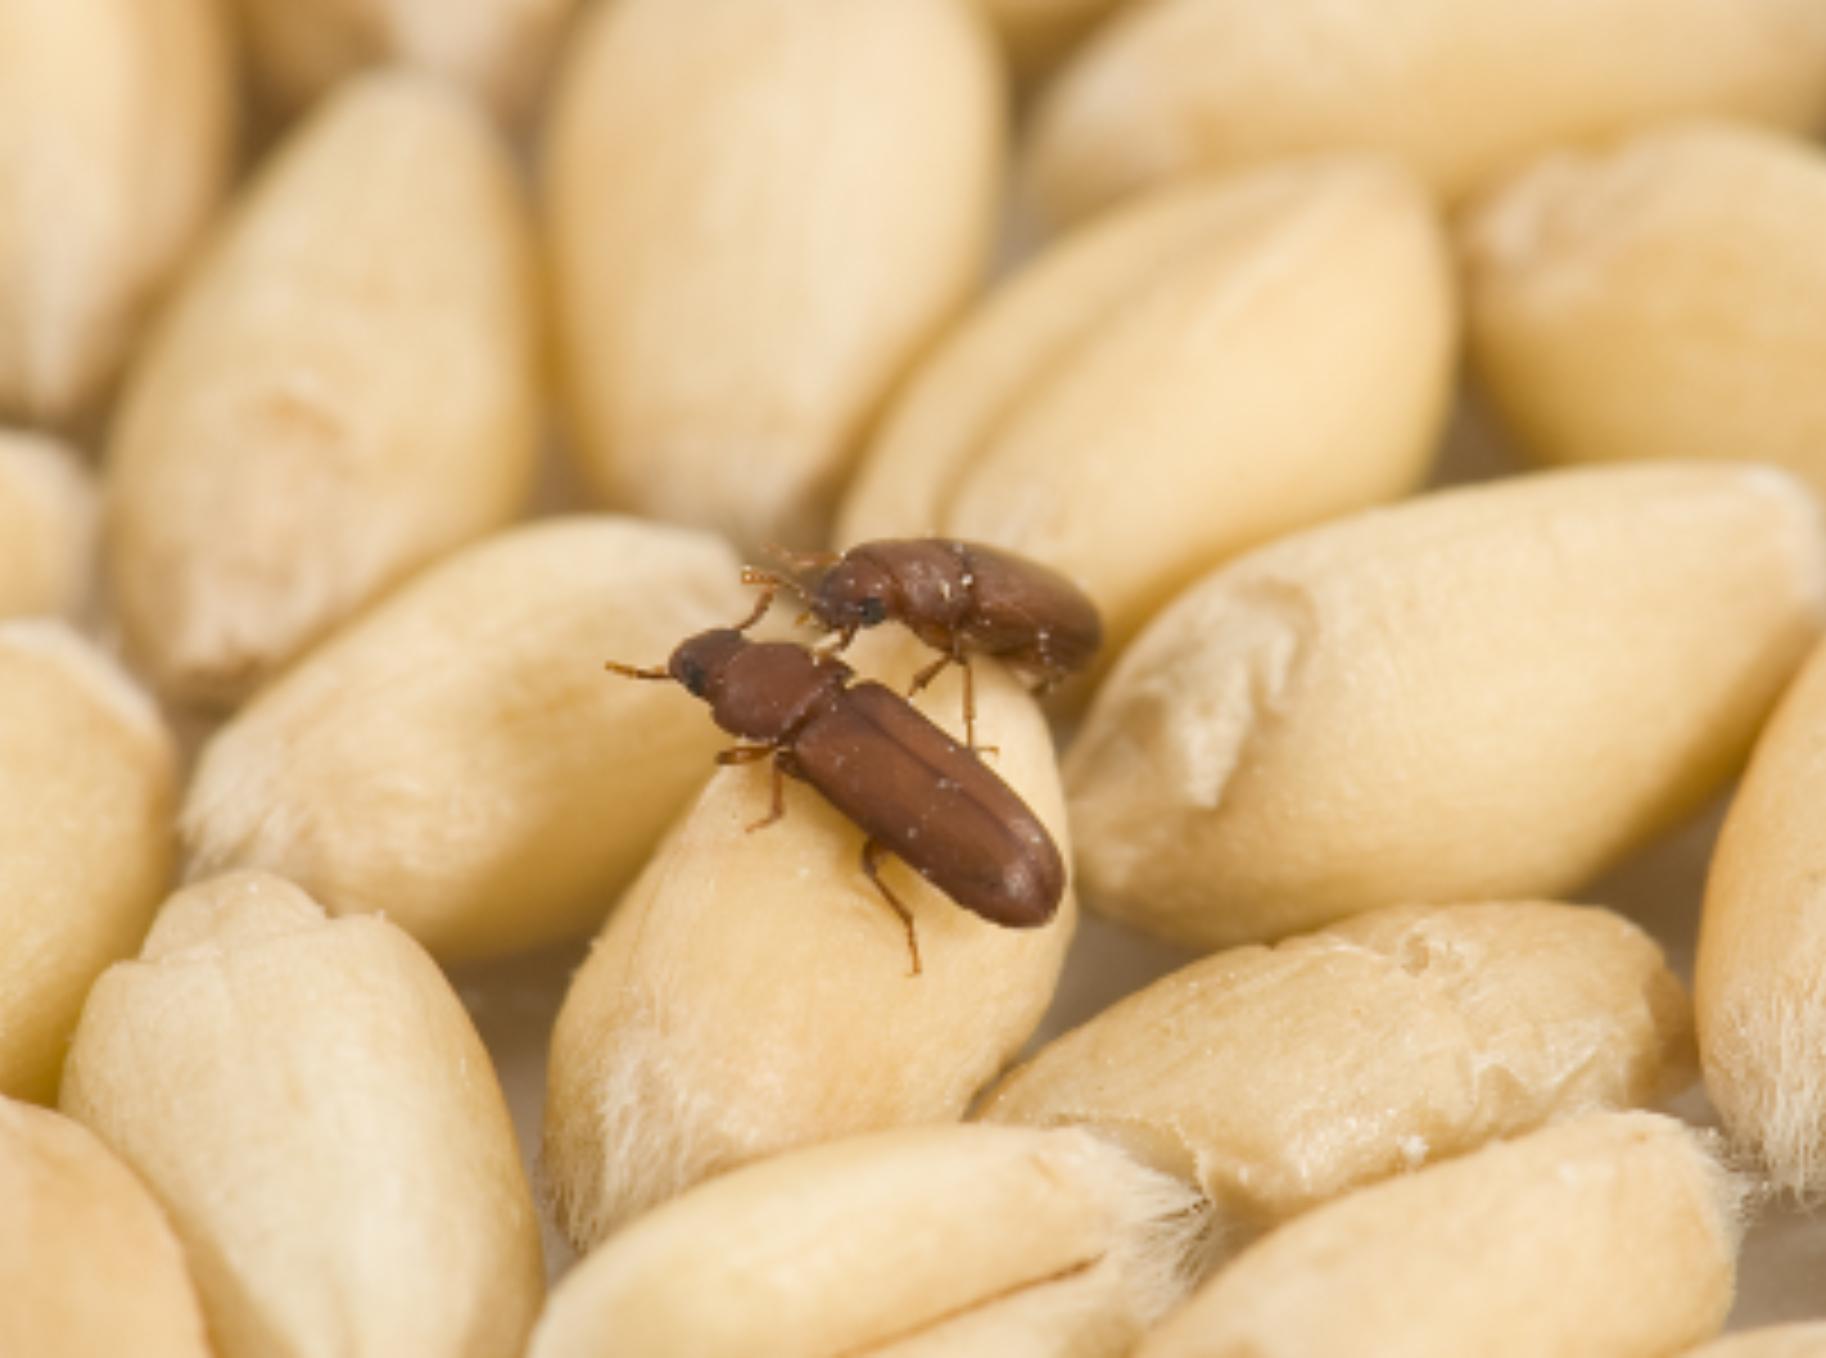 Έντομα αποθηκών και τροφίμων: Μικρά και μεγάλα έντομα στην αποθήκη ή το πατάρι σας – Εξαφανίστε τα μια και καλή